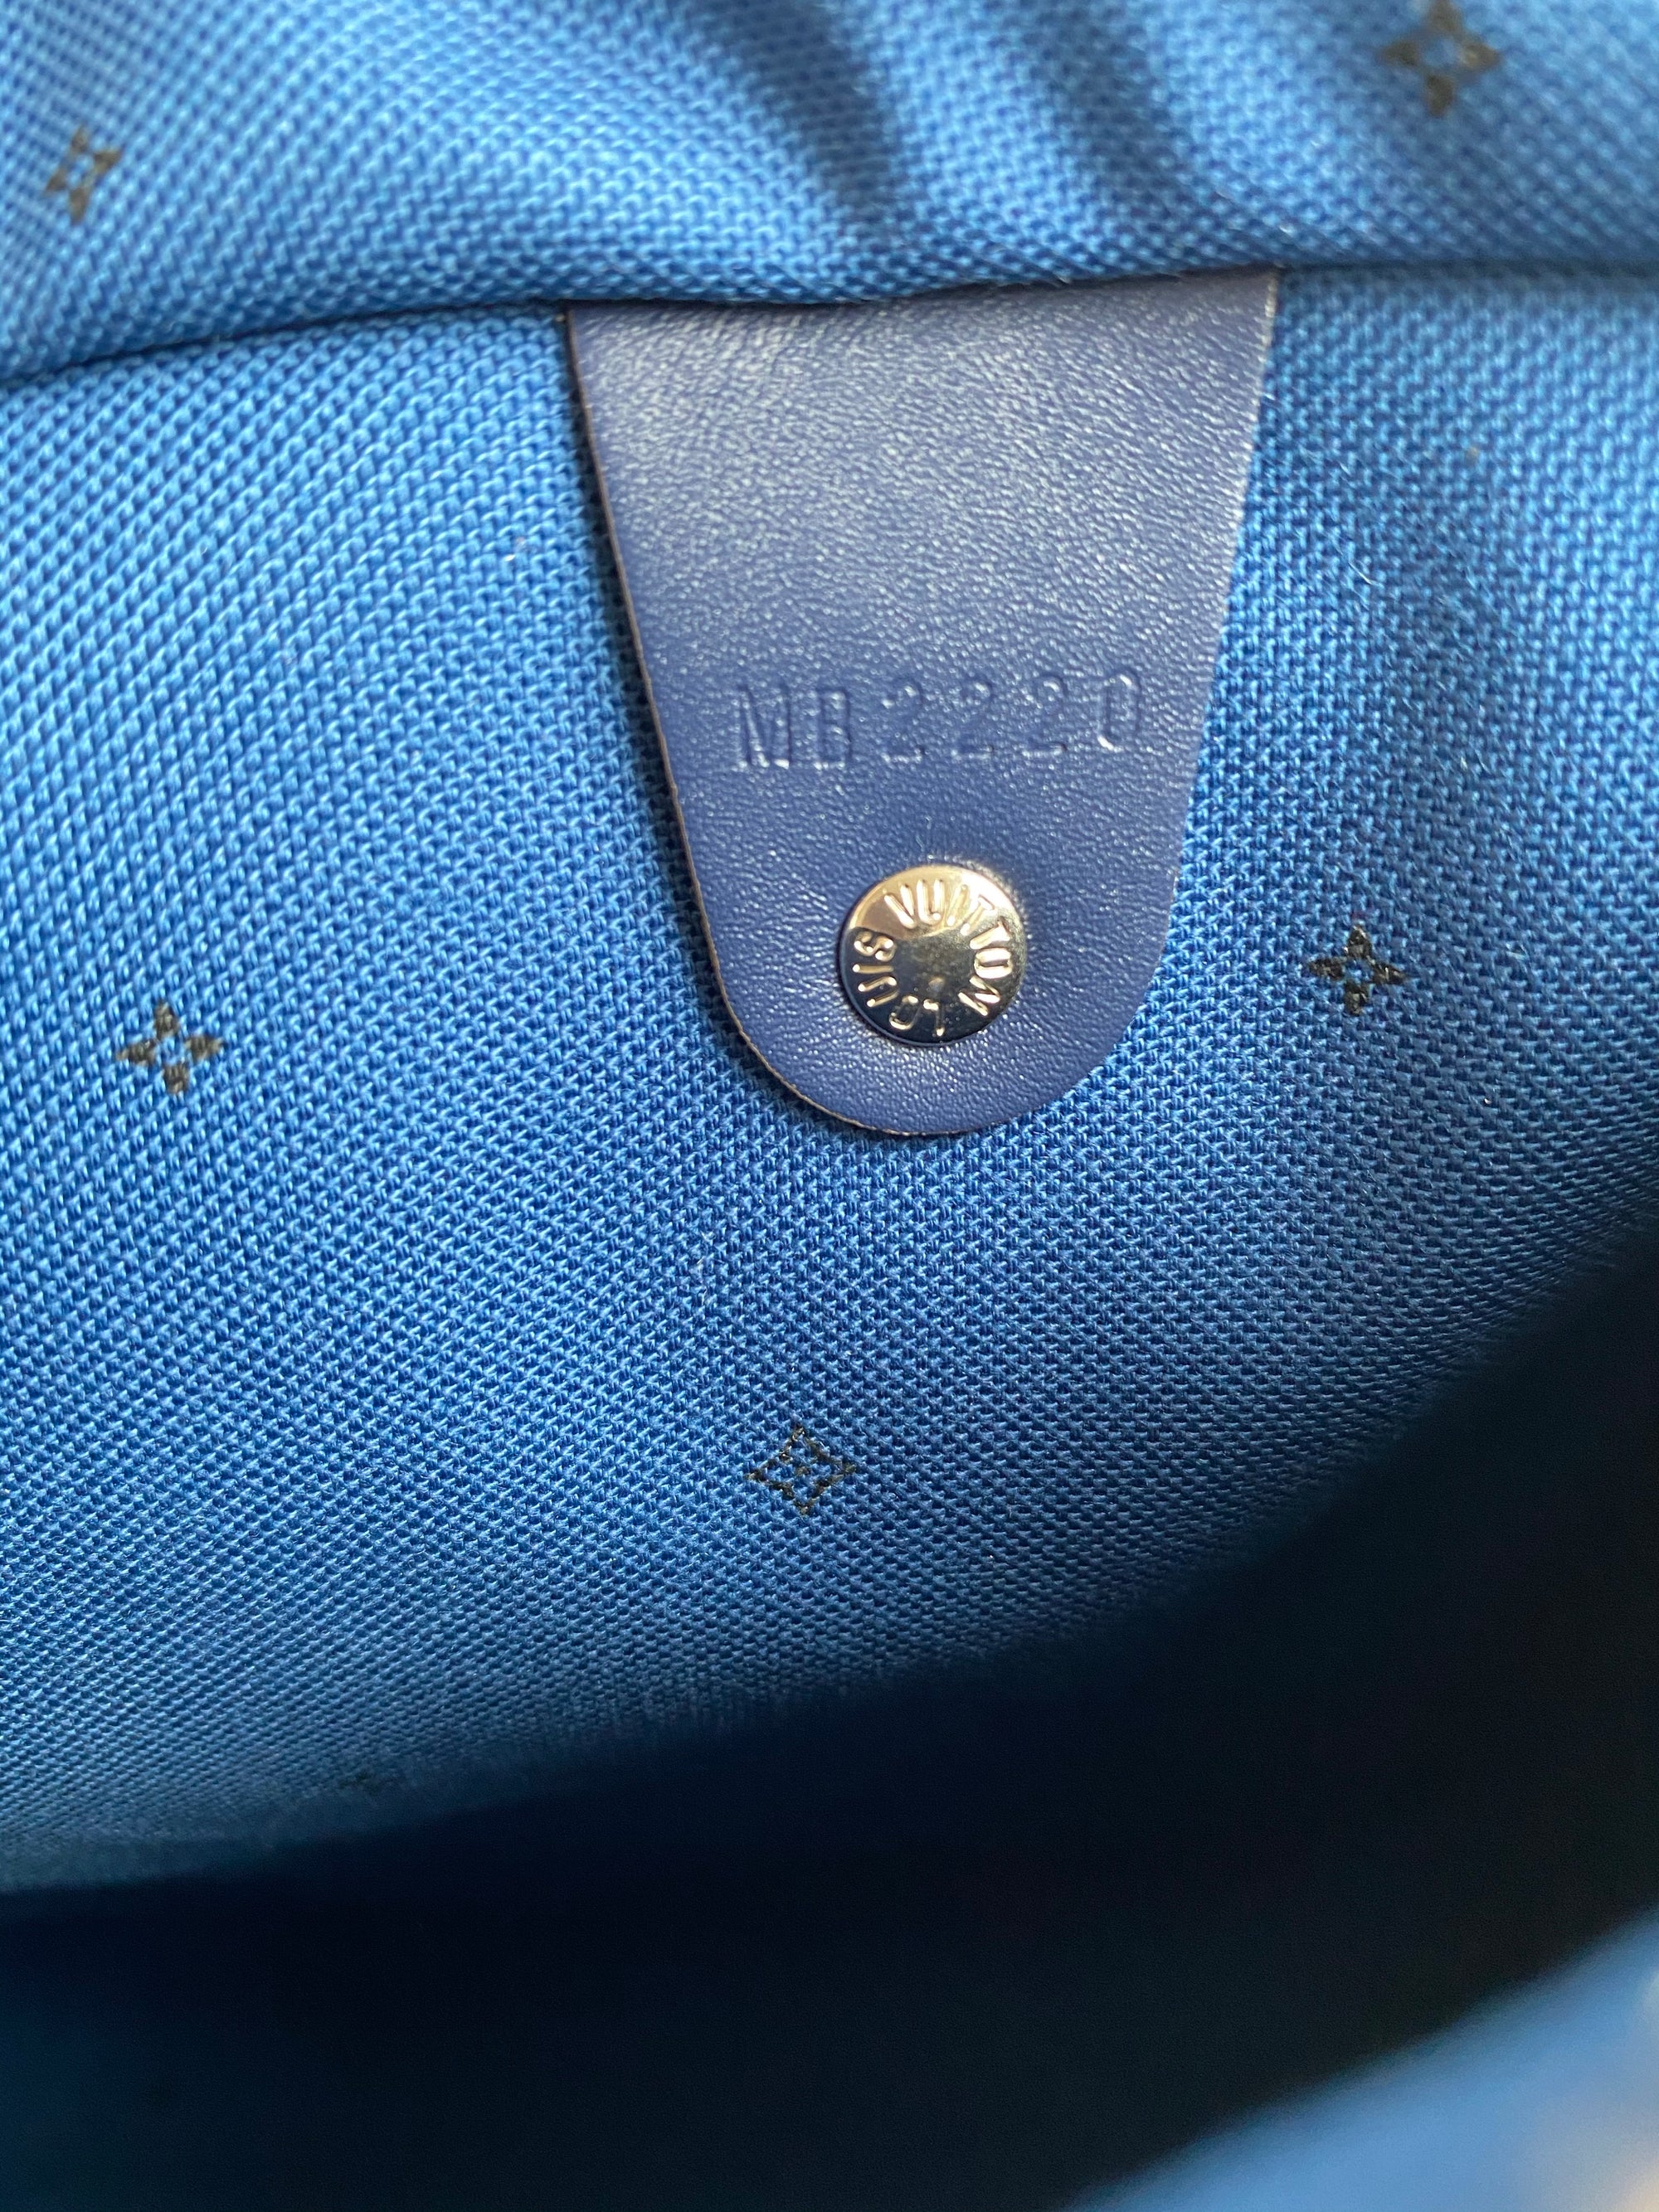 Louis Vuitton Blue Tie Dye Bag